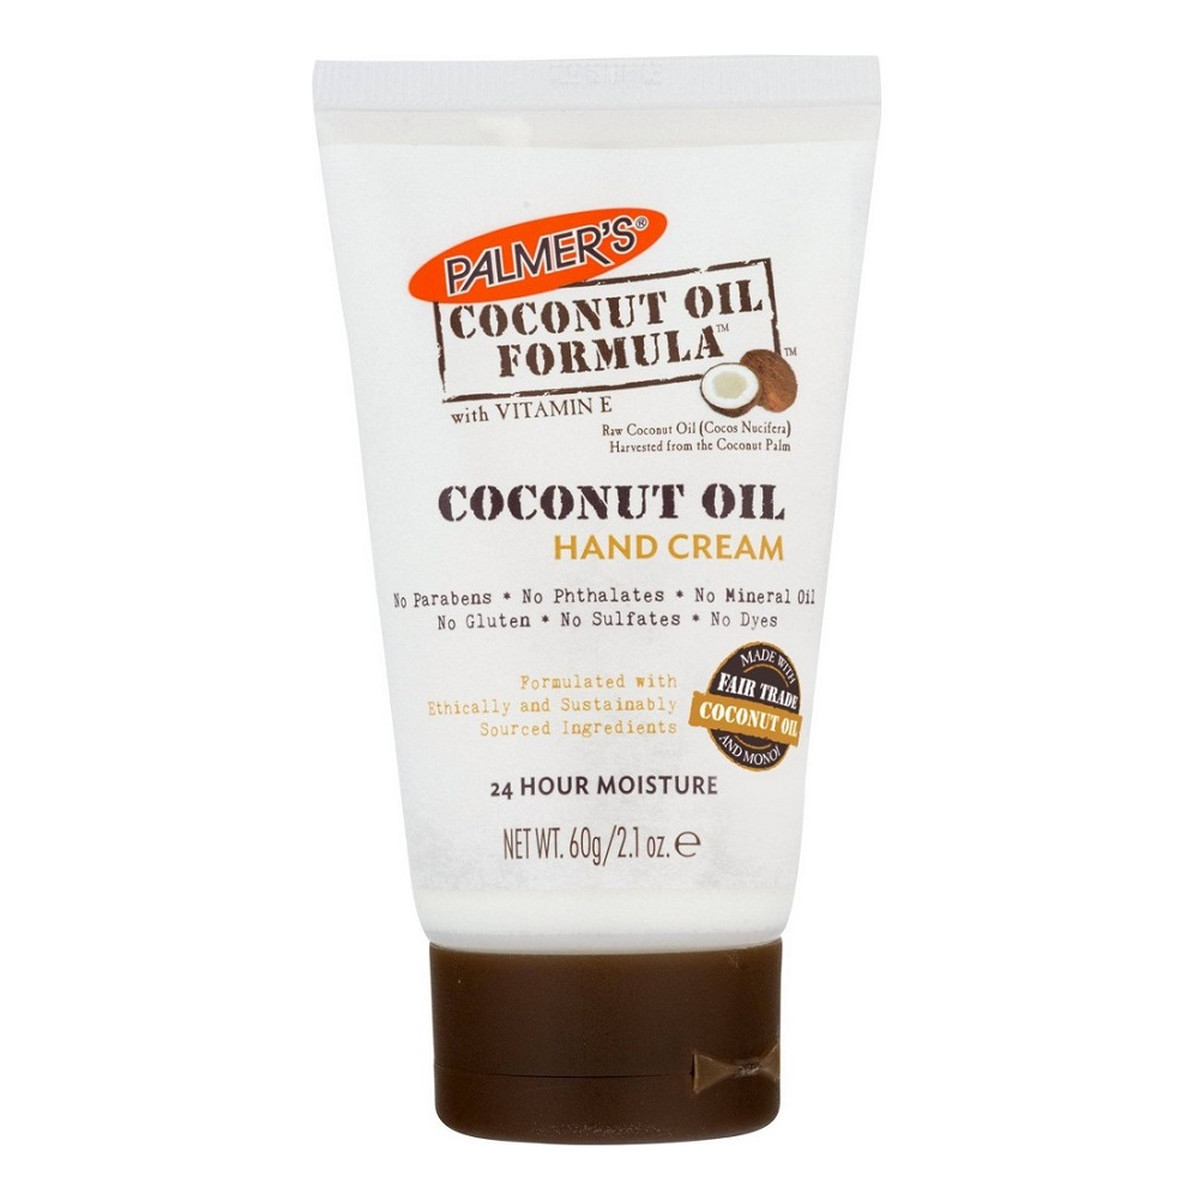 Palmer's Coconut Oil Formula Hand Cream skoncentrowany Krem do rąk z olejkiem kokosowym 60g